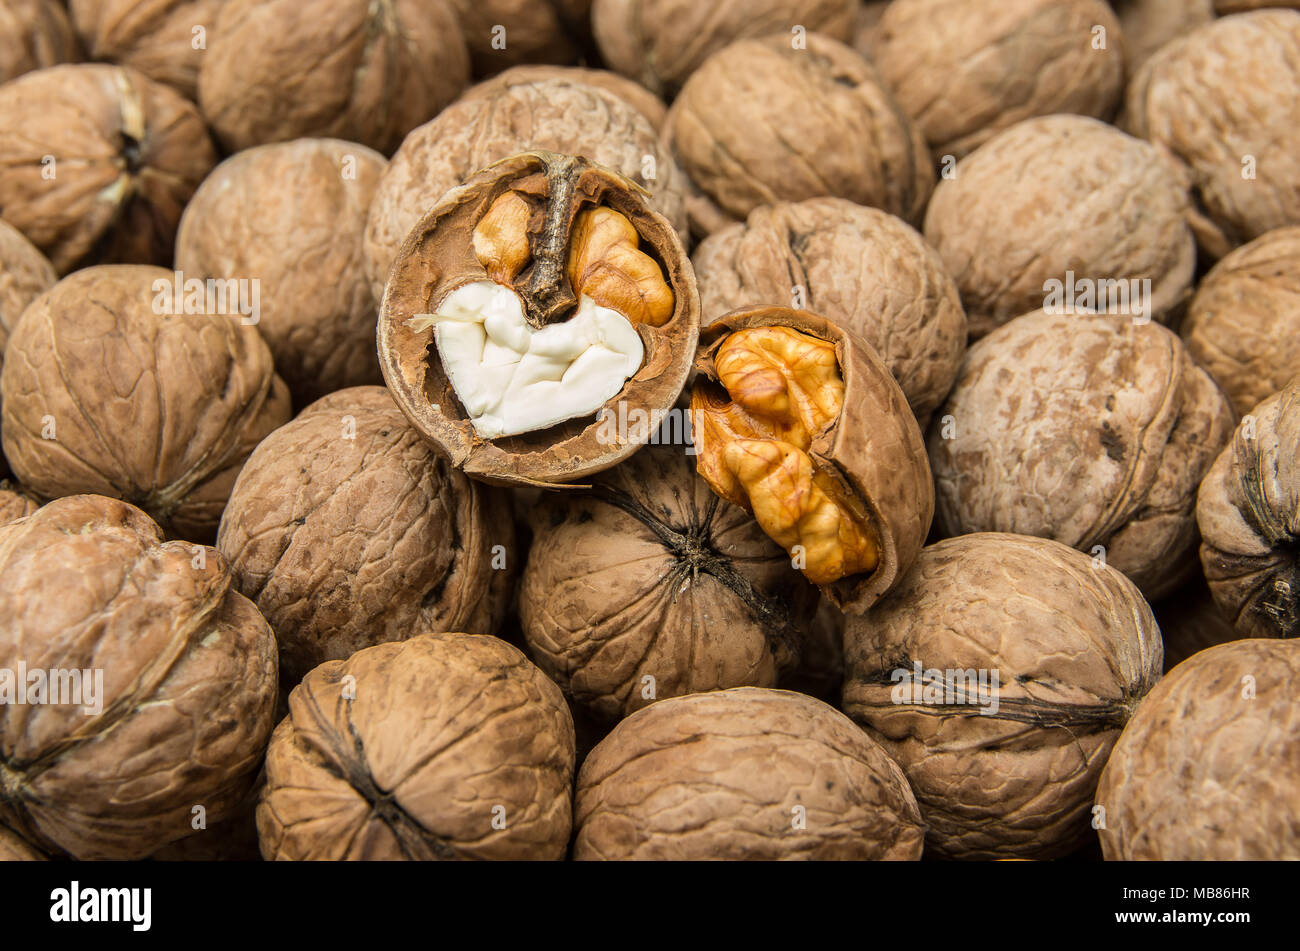 Walnut. Walnut kernel. Stock Photo